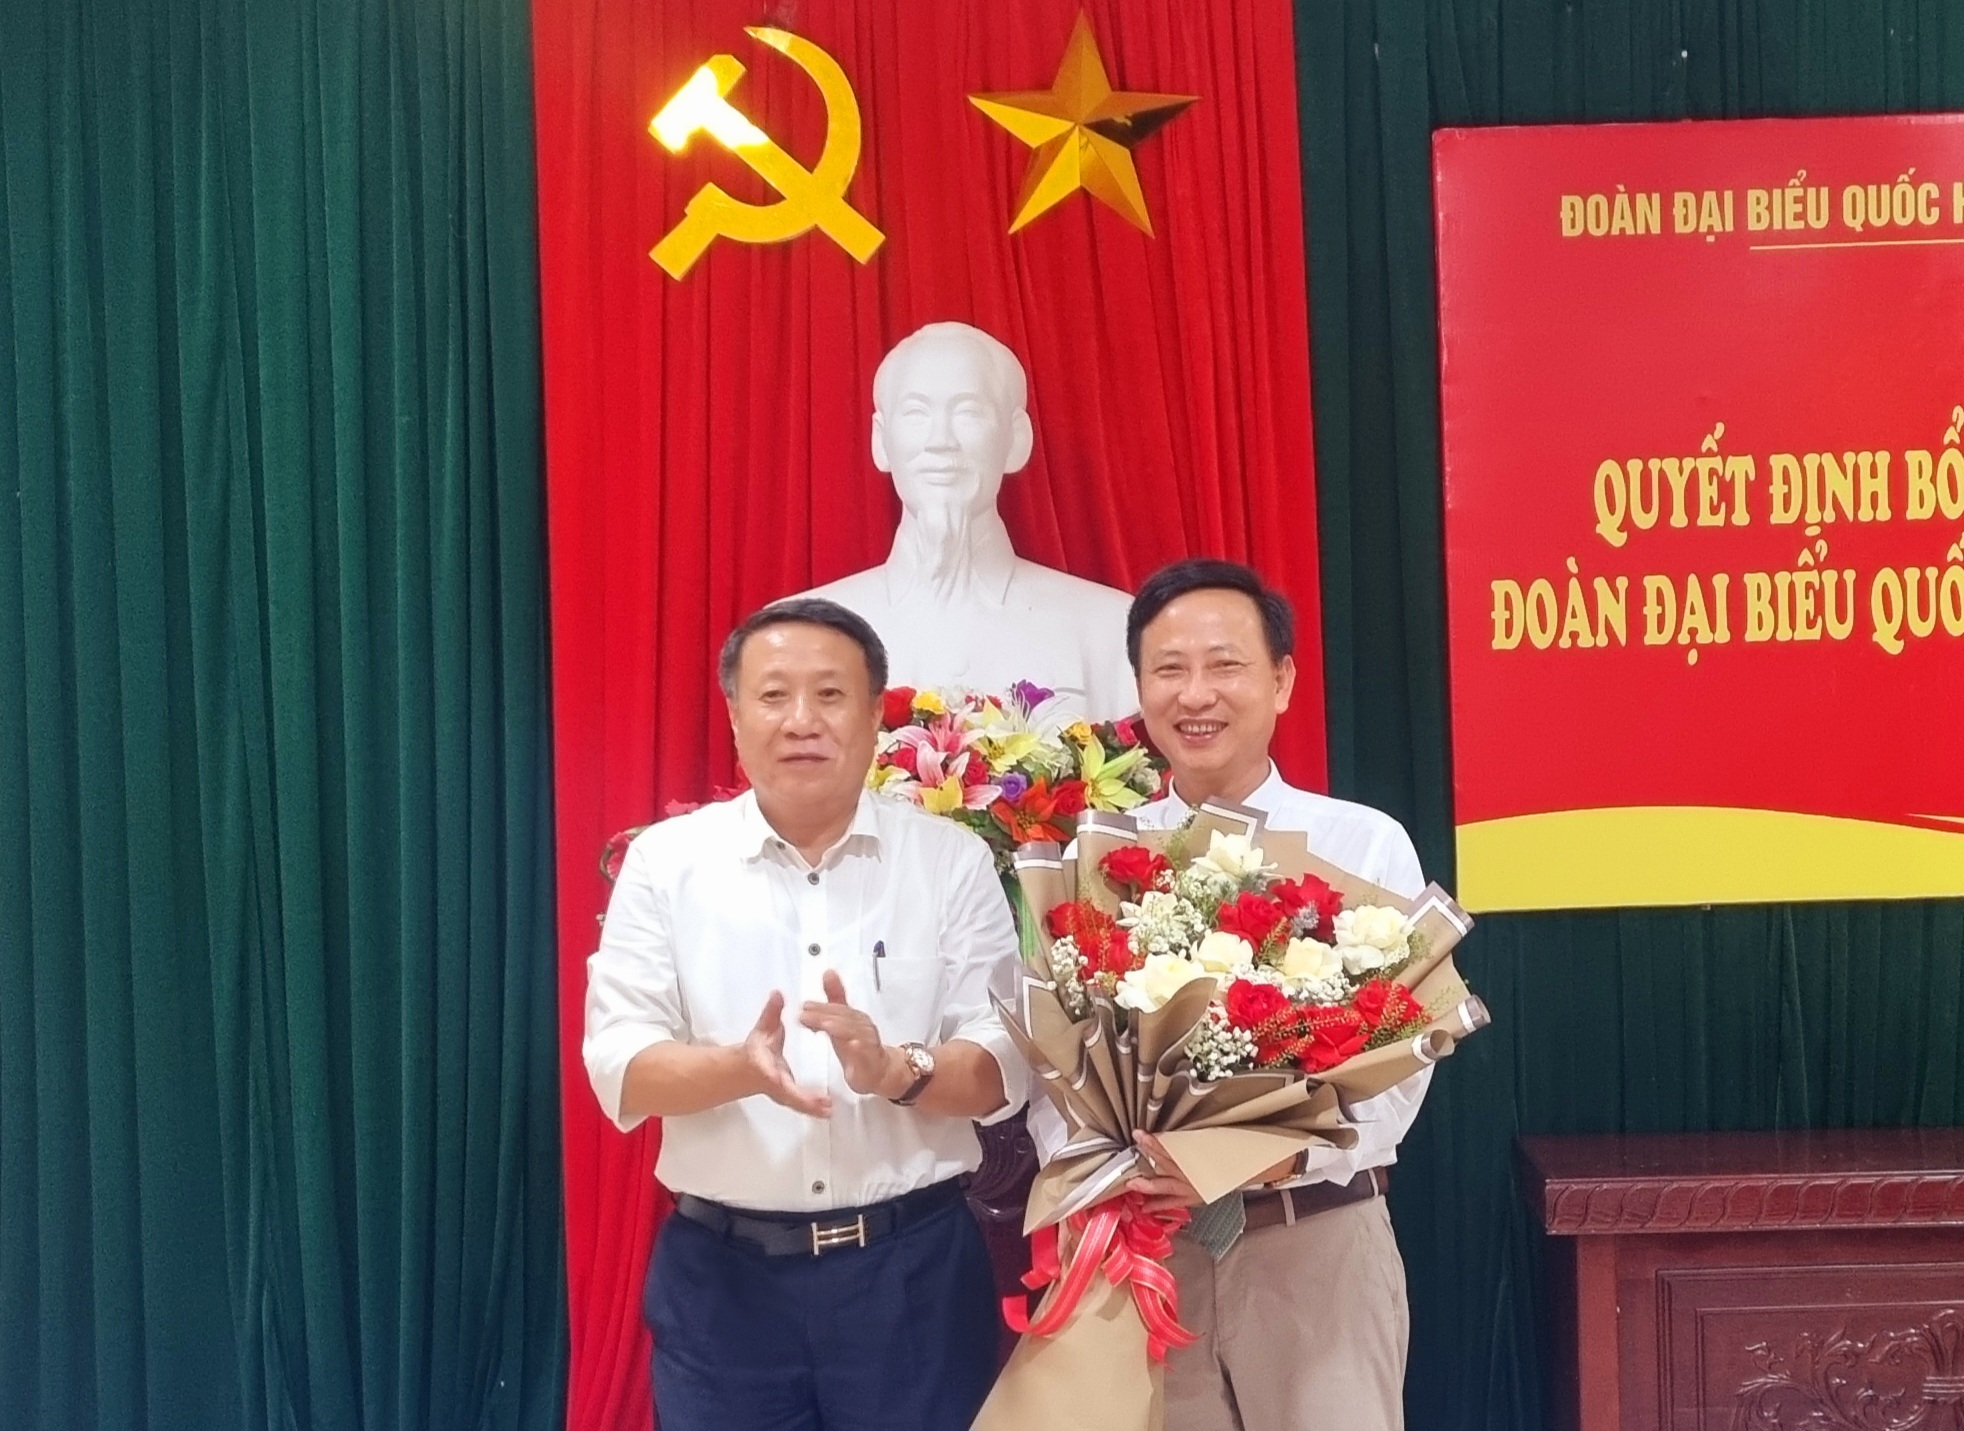 Phó chủ tịch Thường trực UBND tỉnh Hà Sỹ Đồng tặng hoa chúc mừng